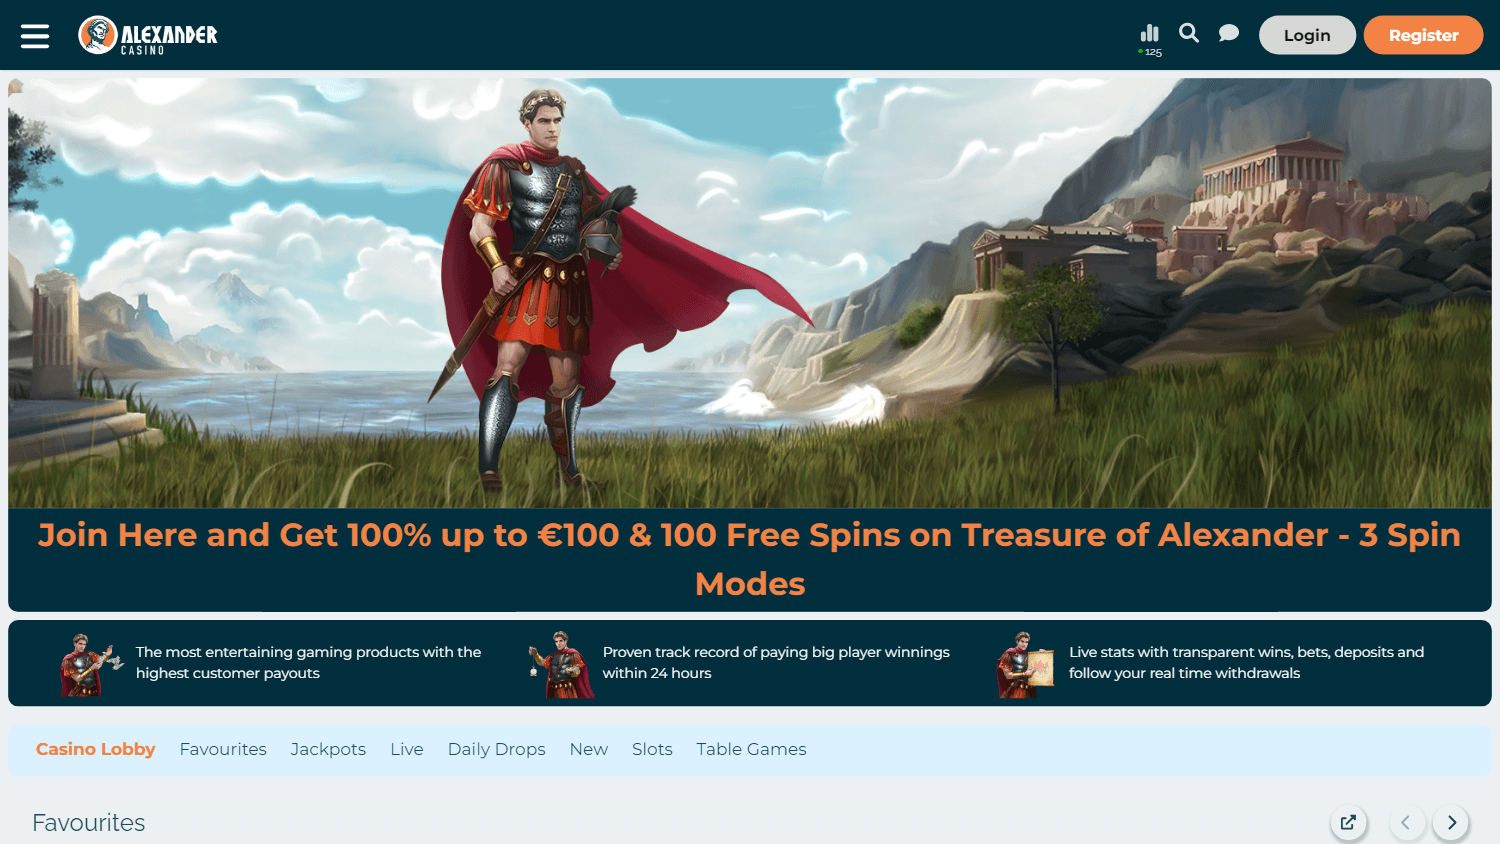 alexander_casino_homepage_desktop